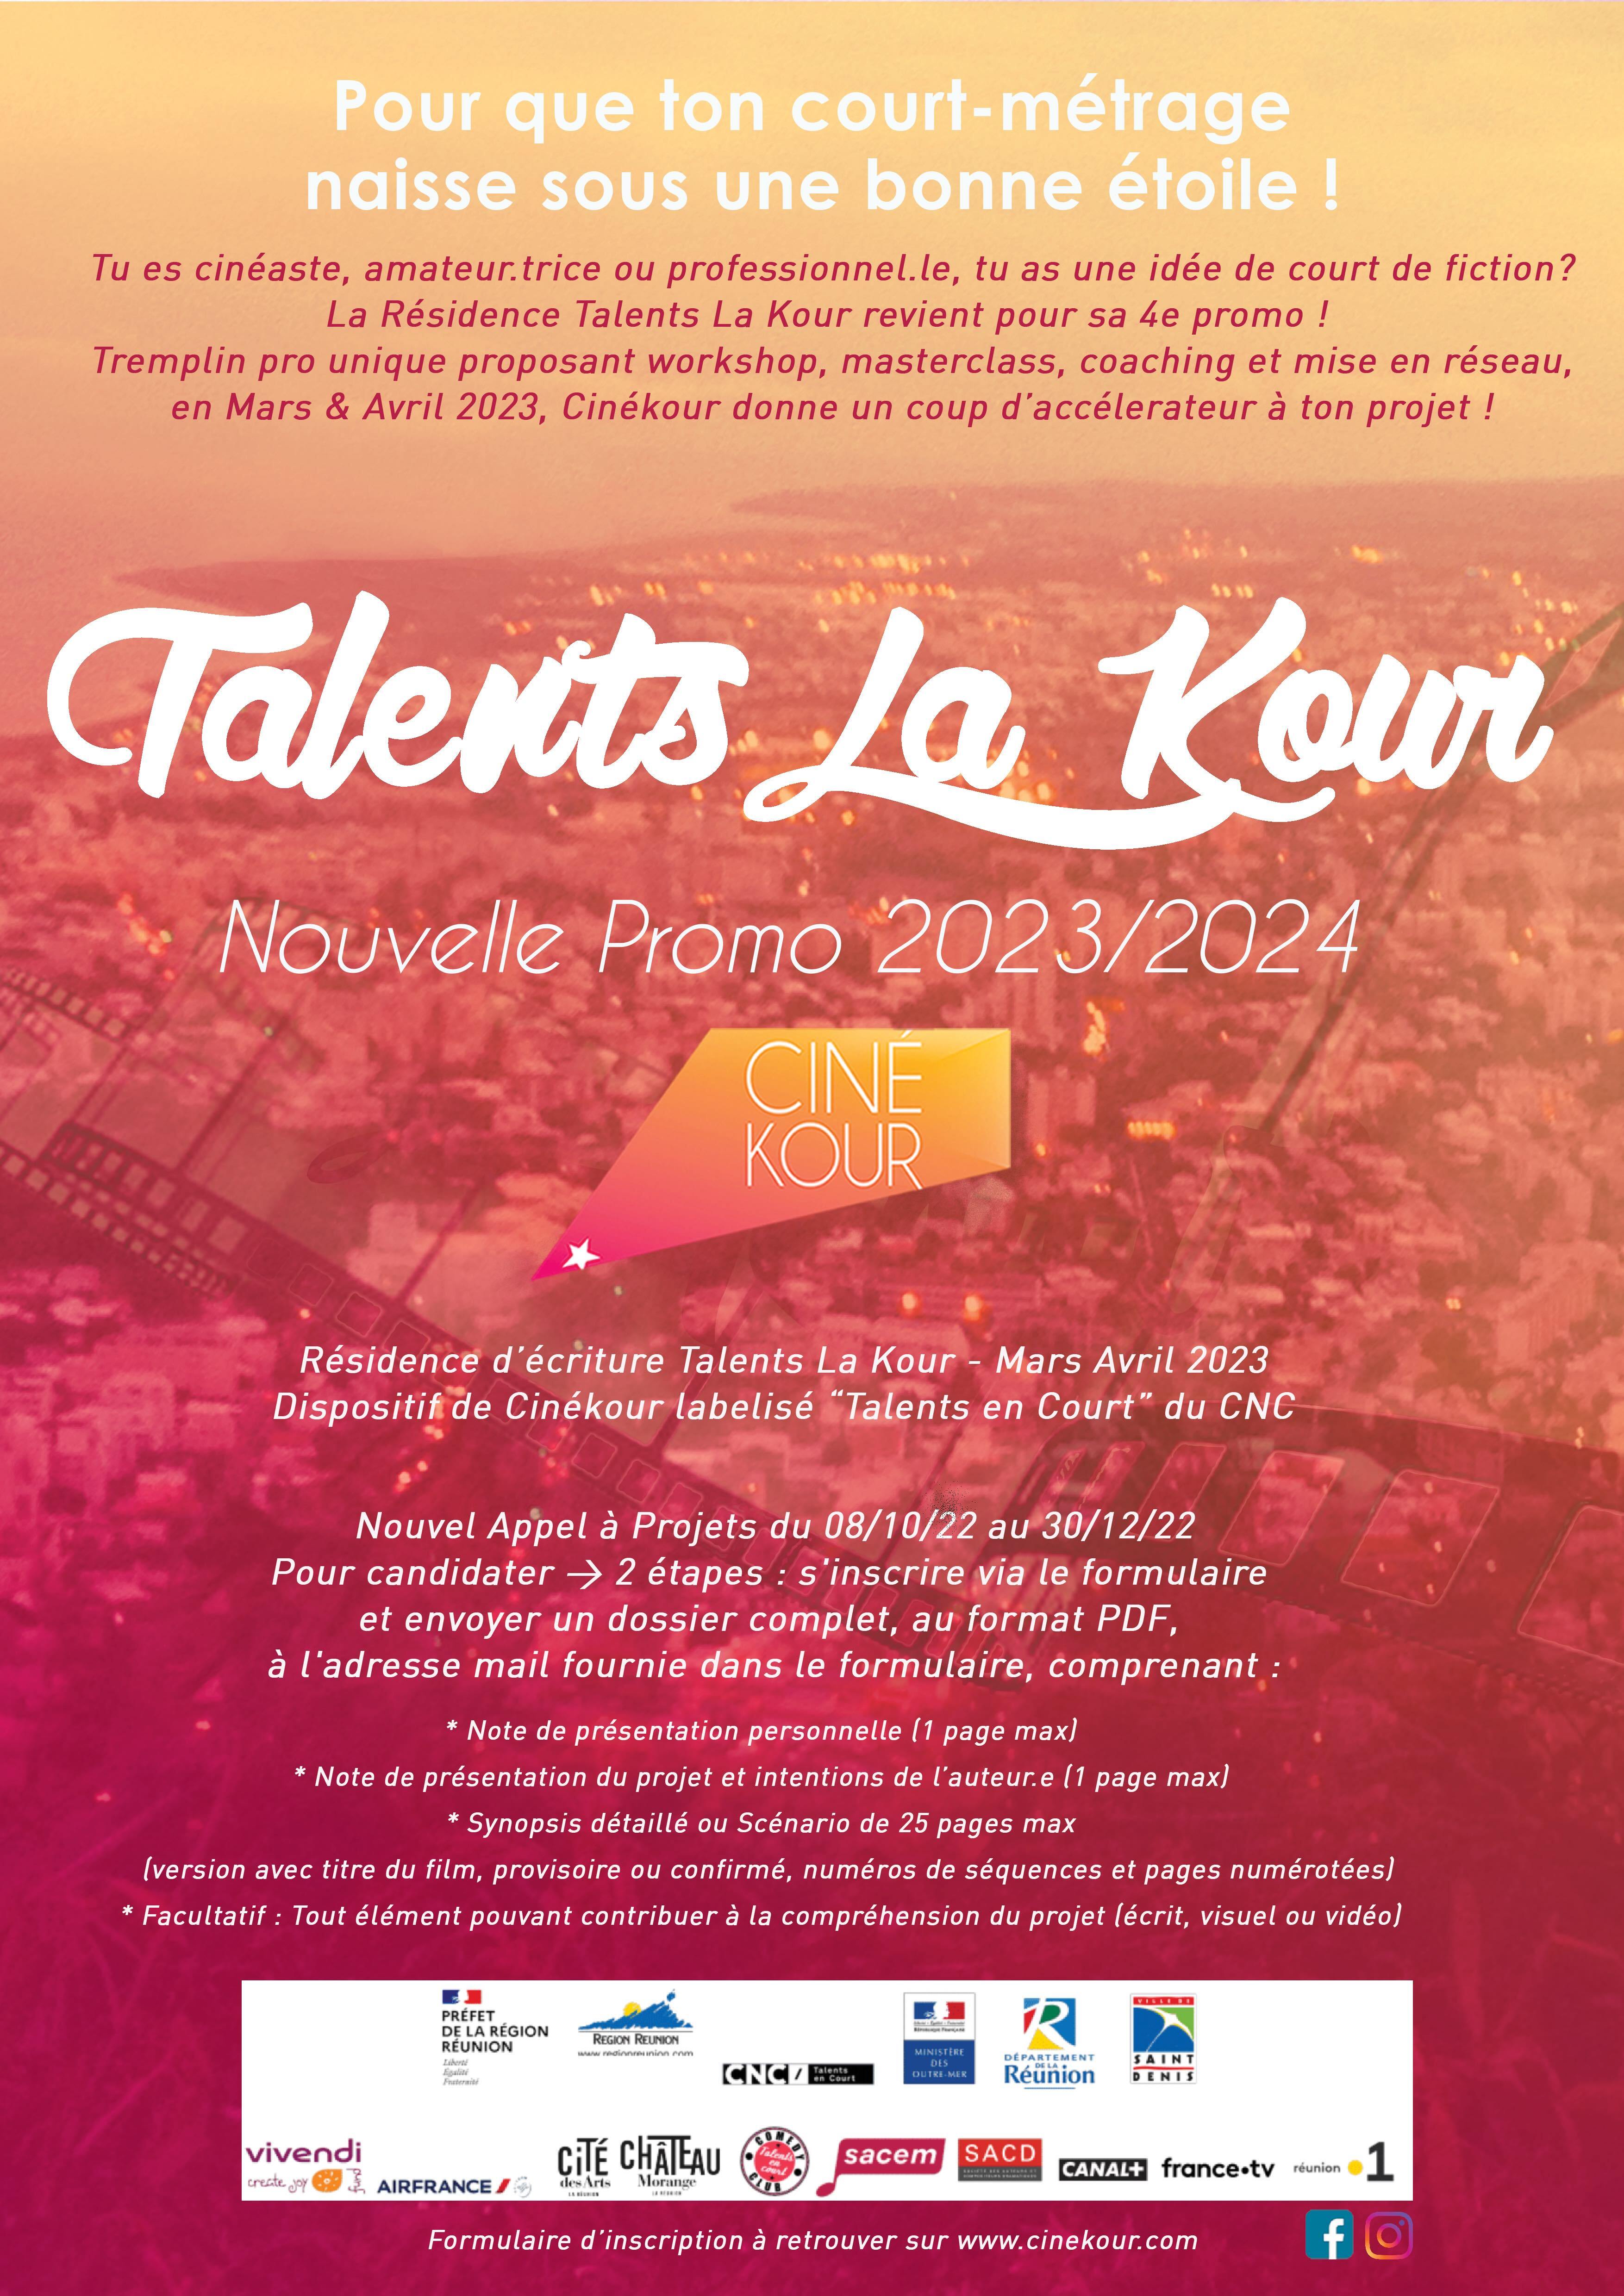 Talents La Kour 2023 : lancement d'un nouvel appel à projet !